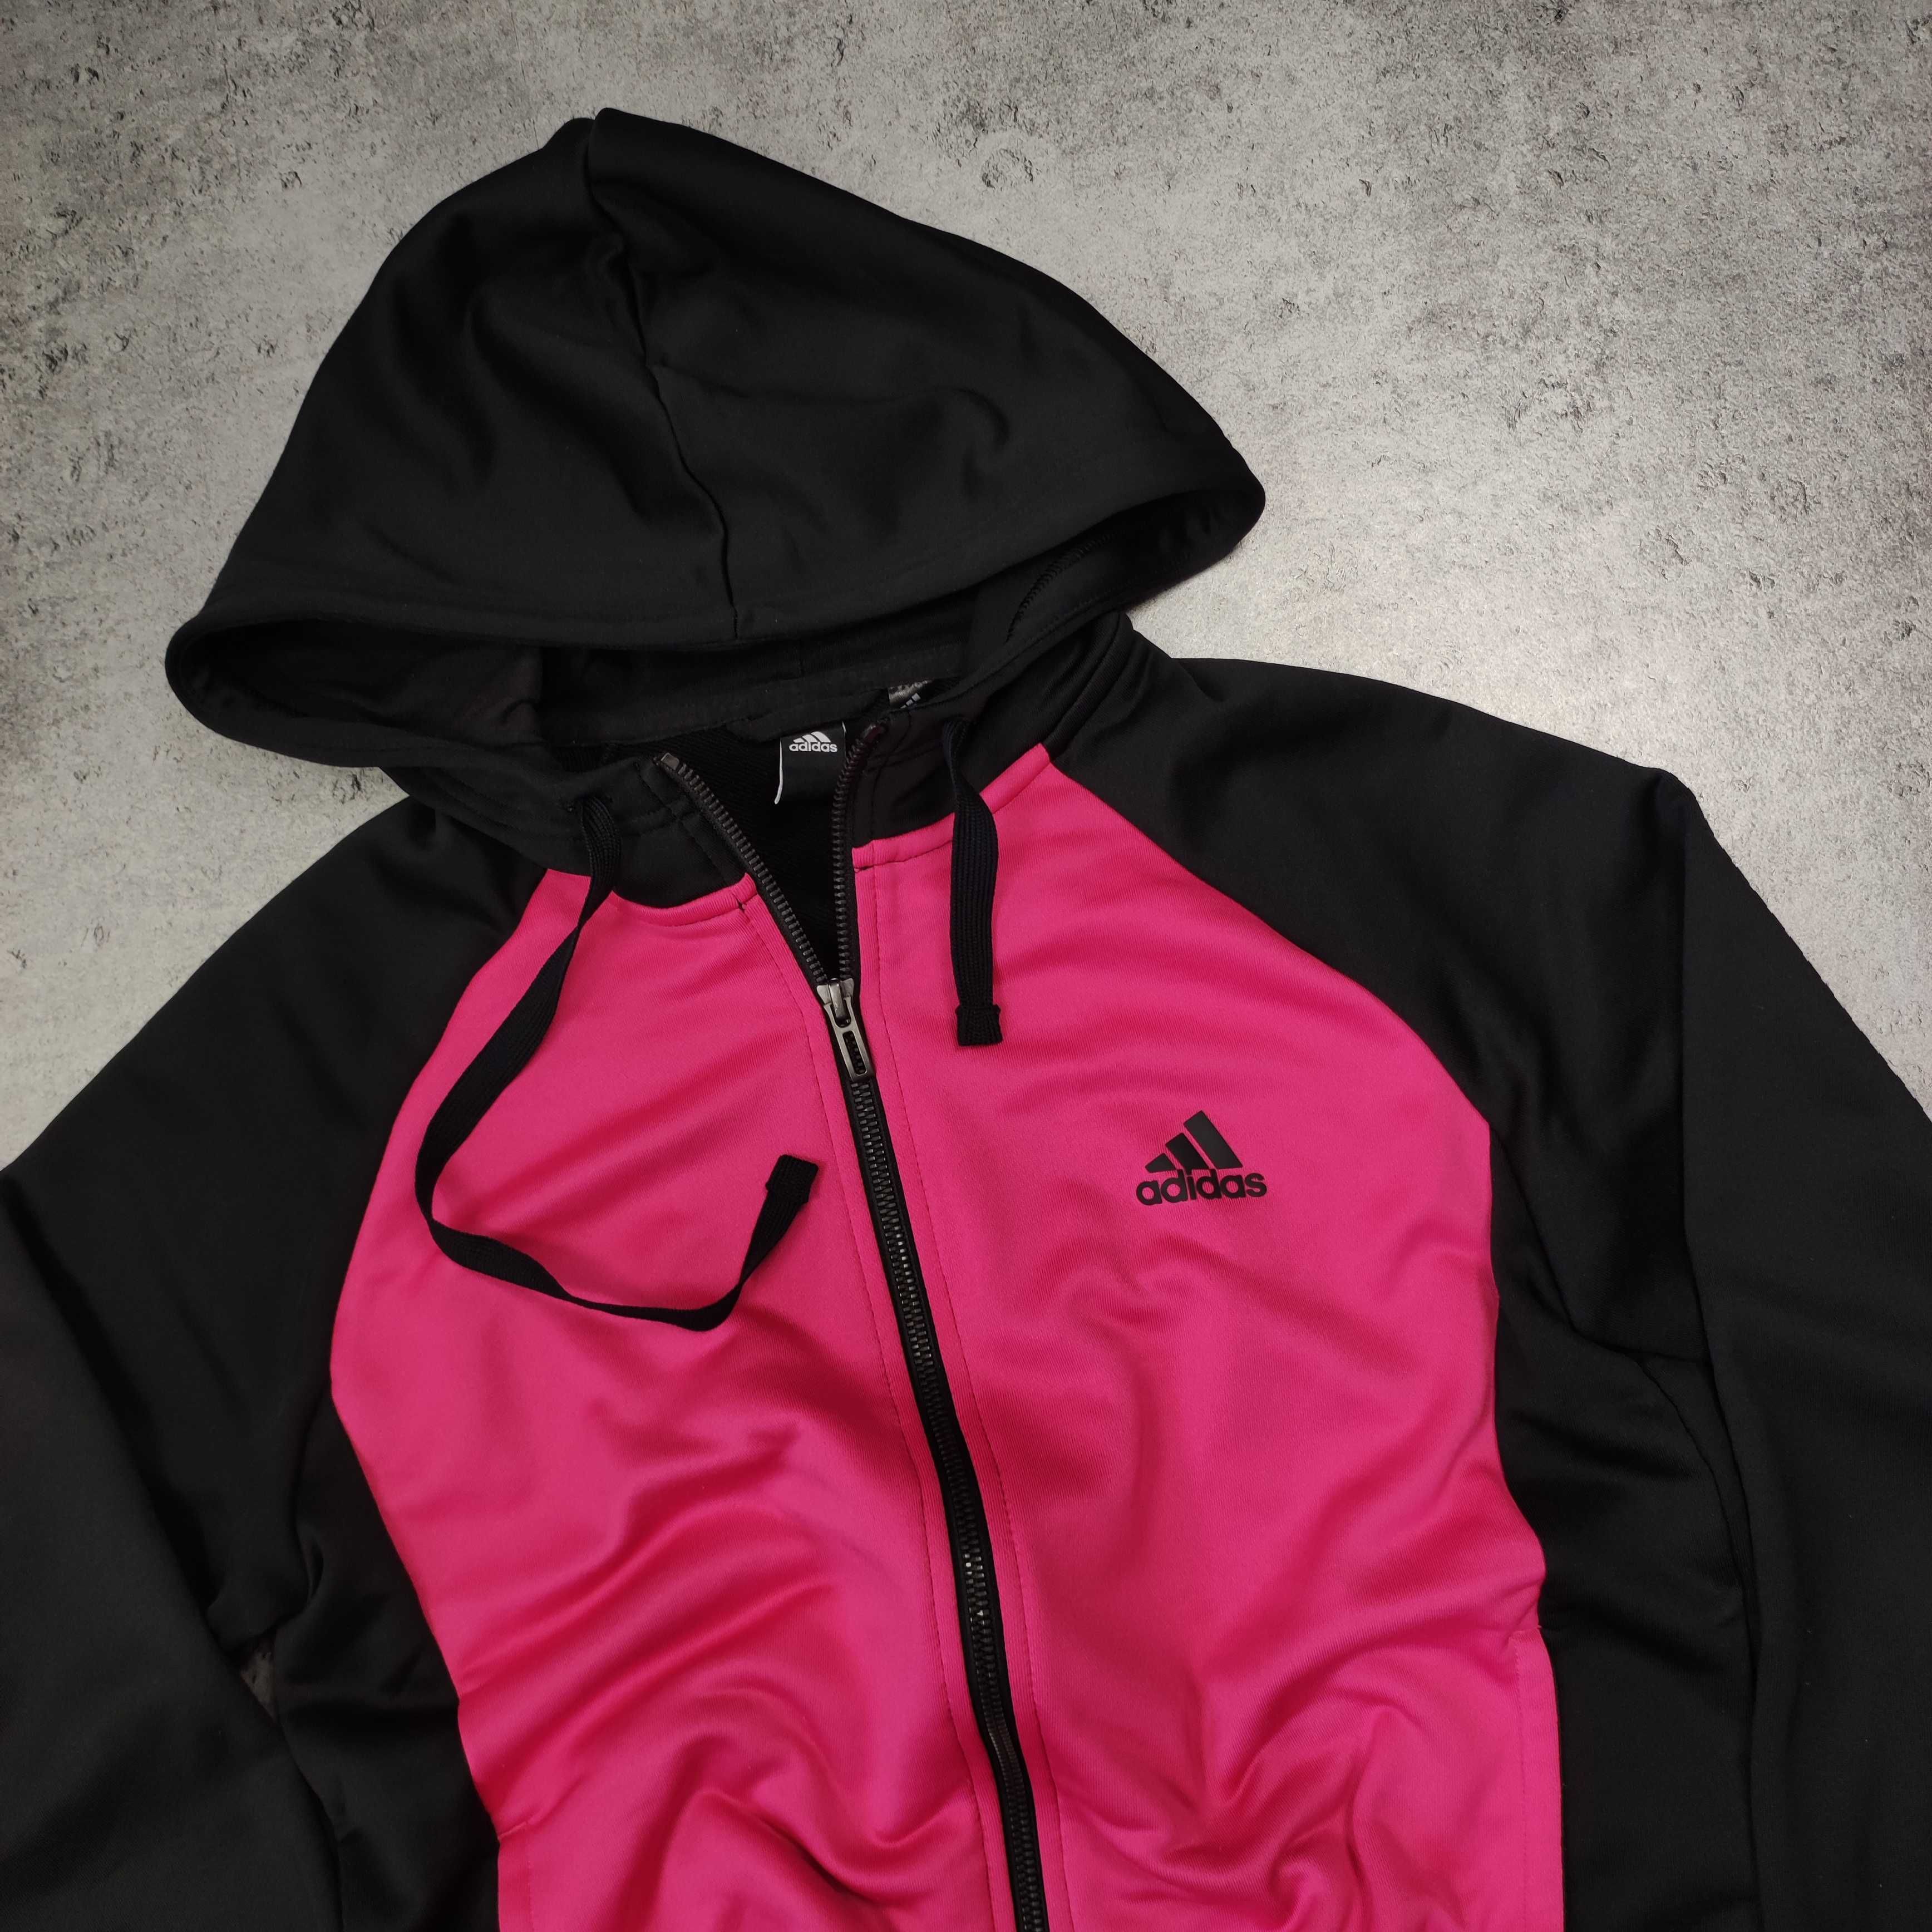 DAMSKA Bluza Sportowa Rozpinana Hoodie z Kapturem Różowo Czarna Adidas